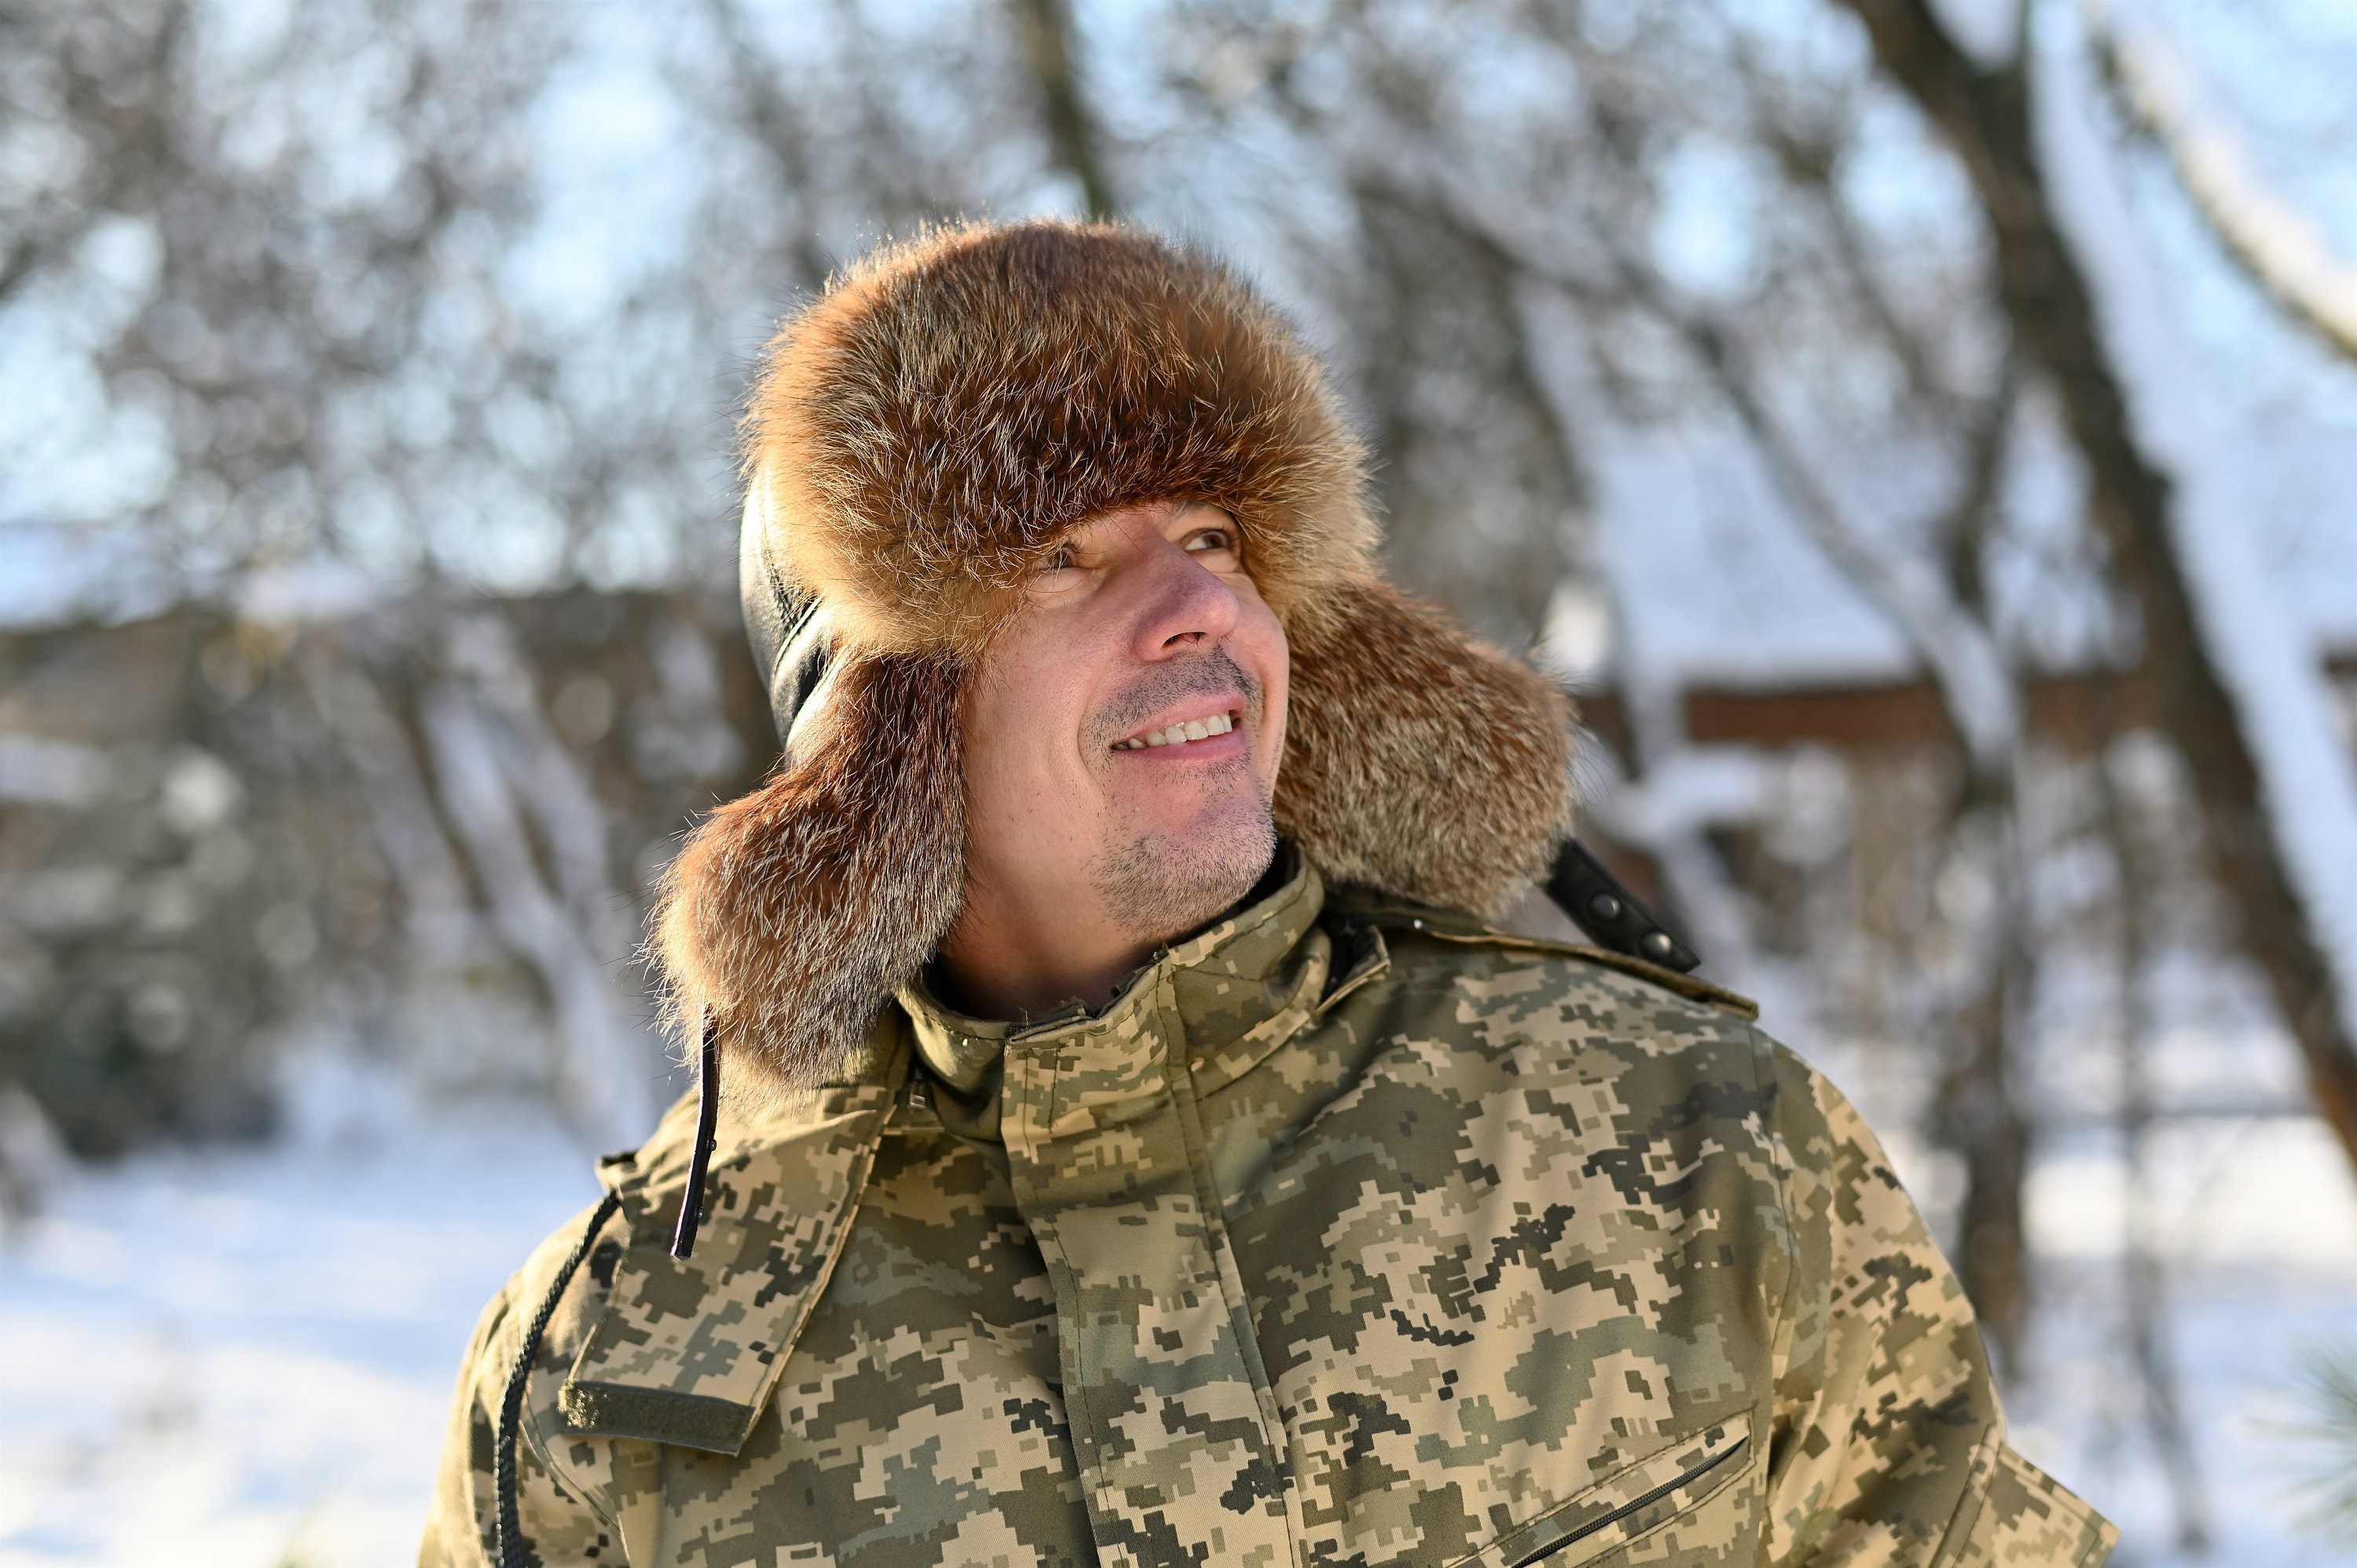 Men's Astrakhan Hat Ushanka Winter Fur Headdress Grey, 60